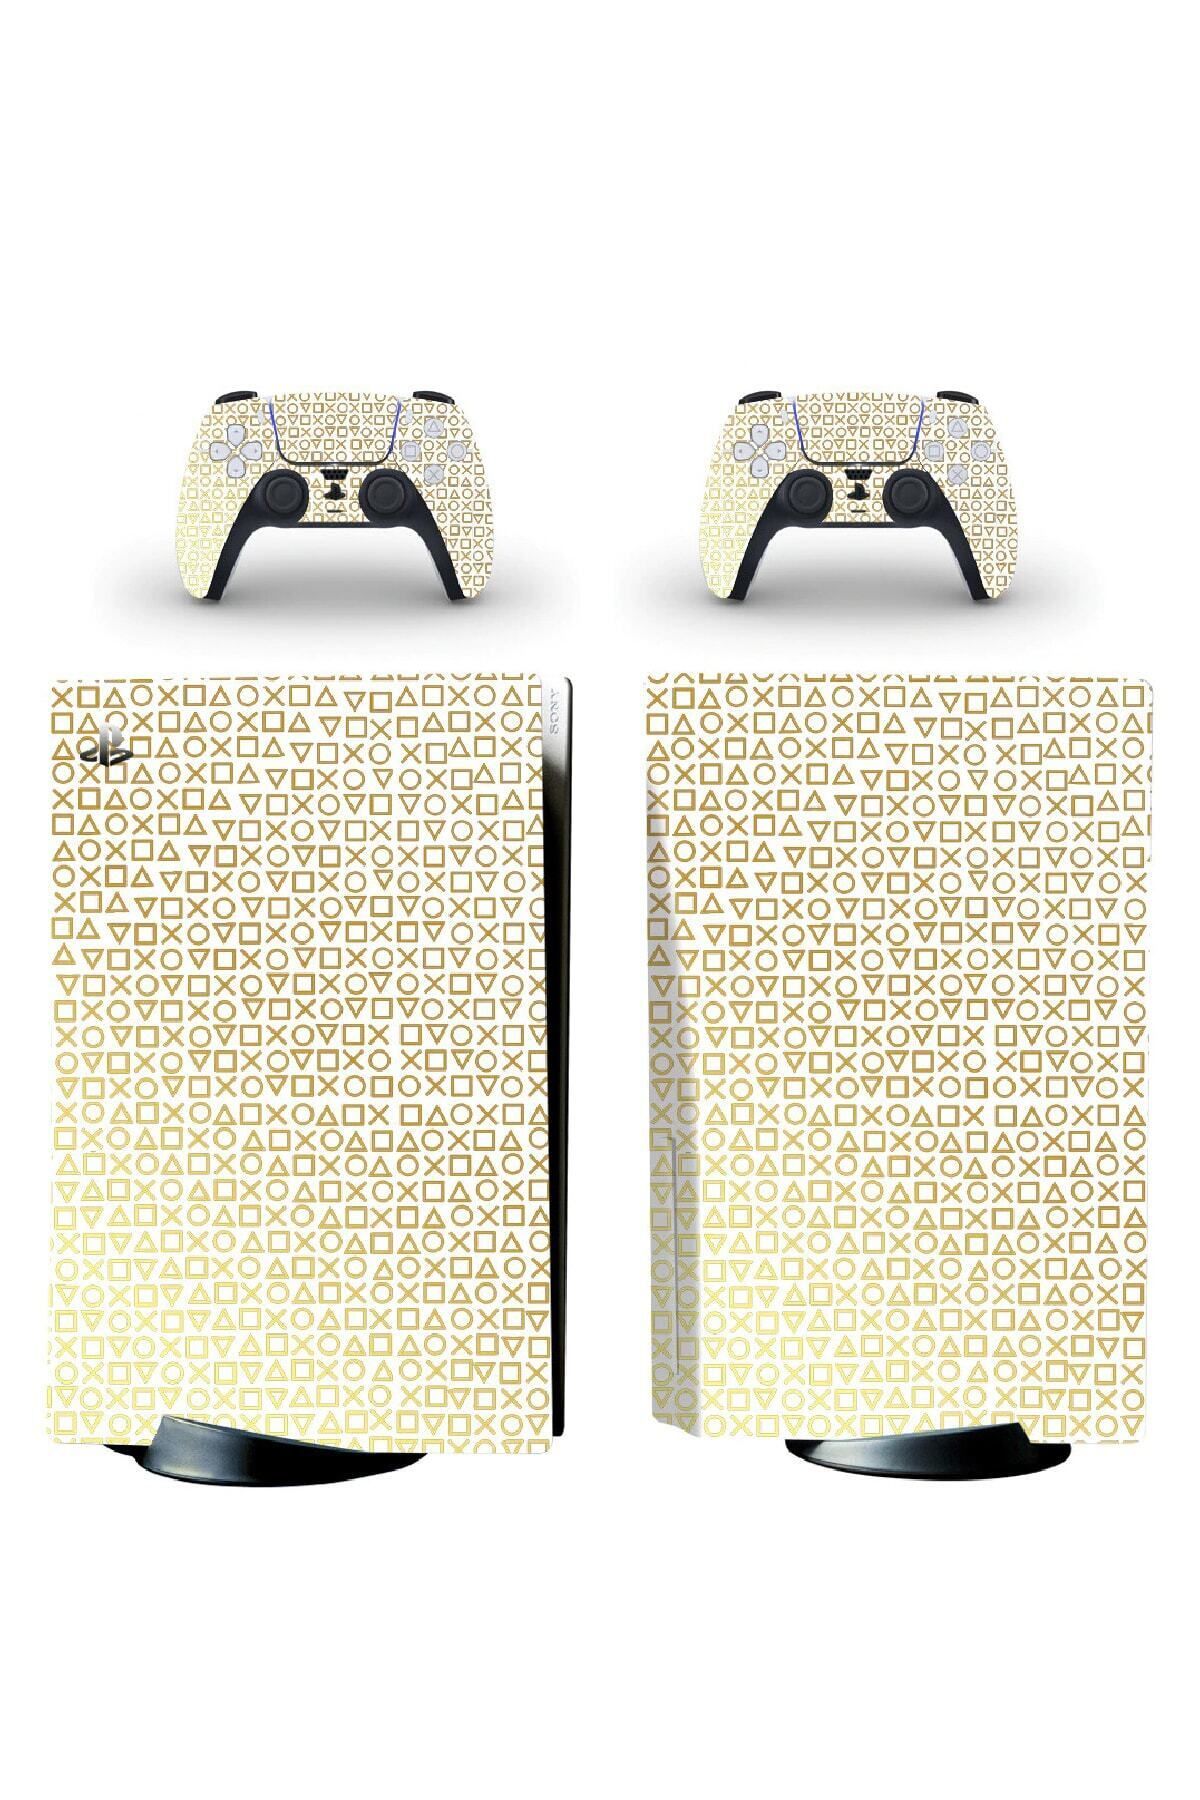 Kt Grup Beyaz Arkaplan Gold Kol Düğmeleri Playstation 5 Standart Disk Edition Sticker Kaplama Seti